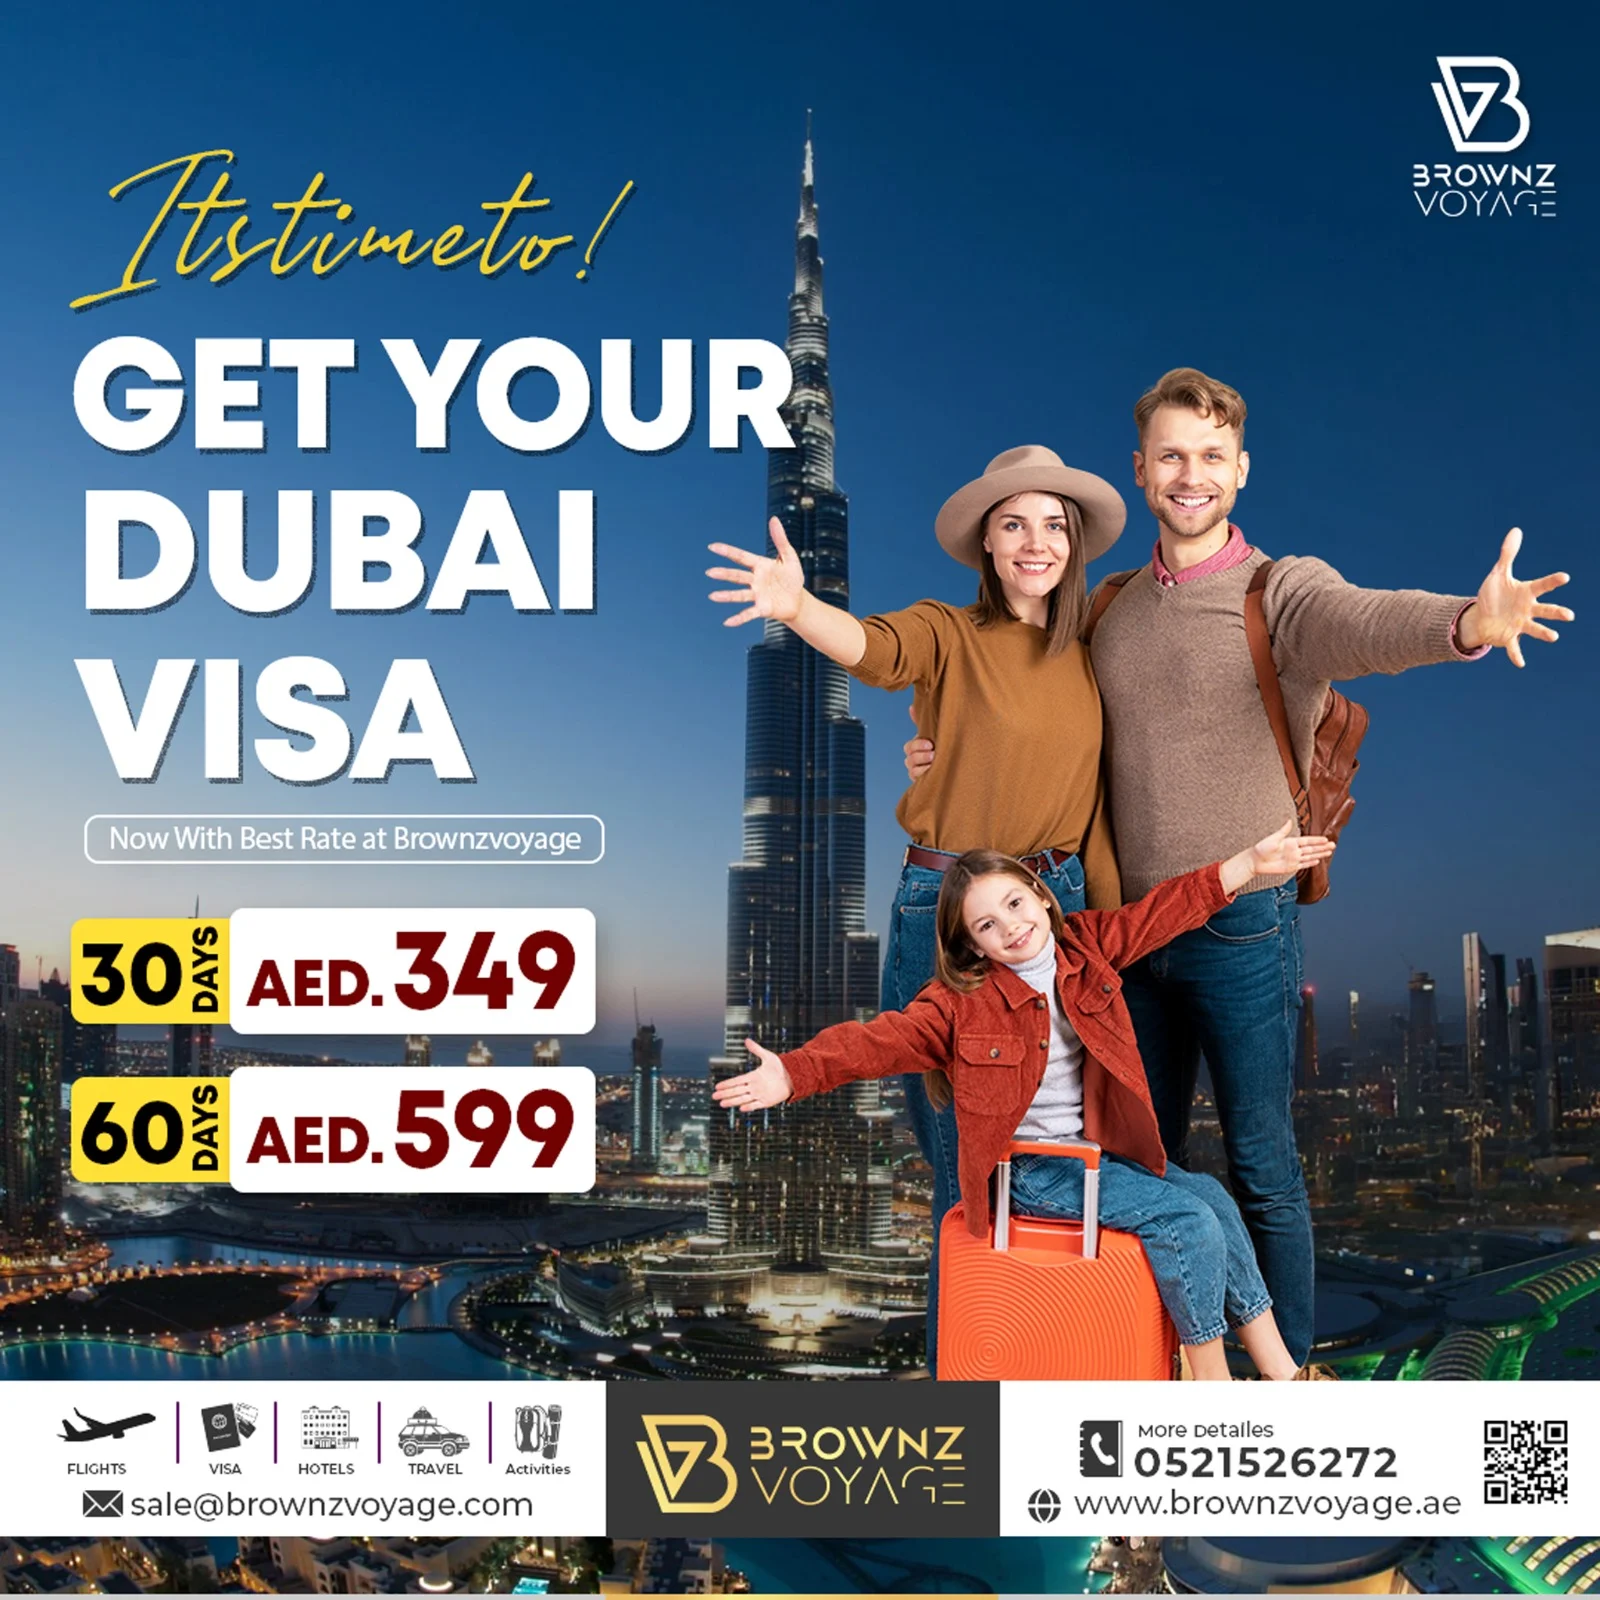 GET YOUR DUBAI VISA